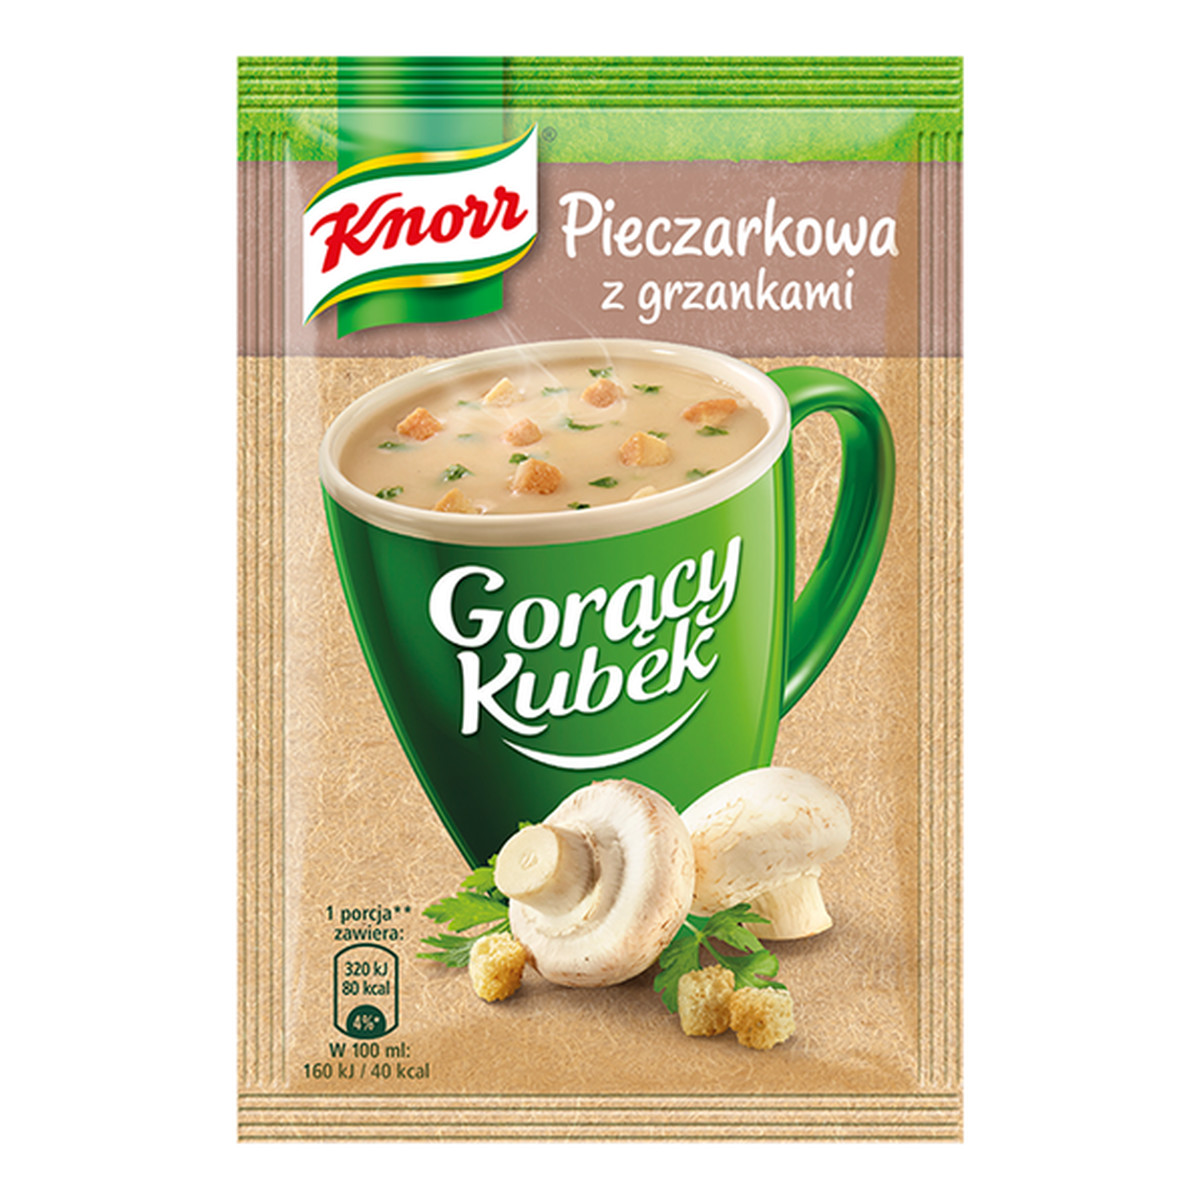 Knorr Gorący Kubek Pieczarkowa z grzankami 15g